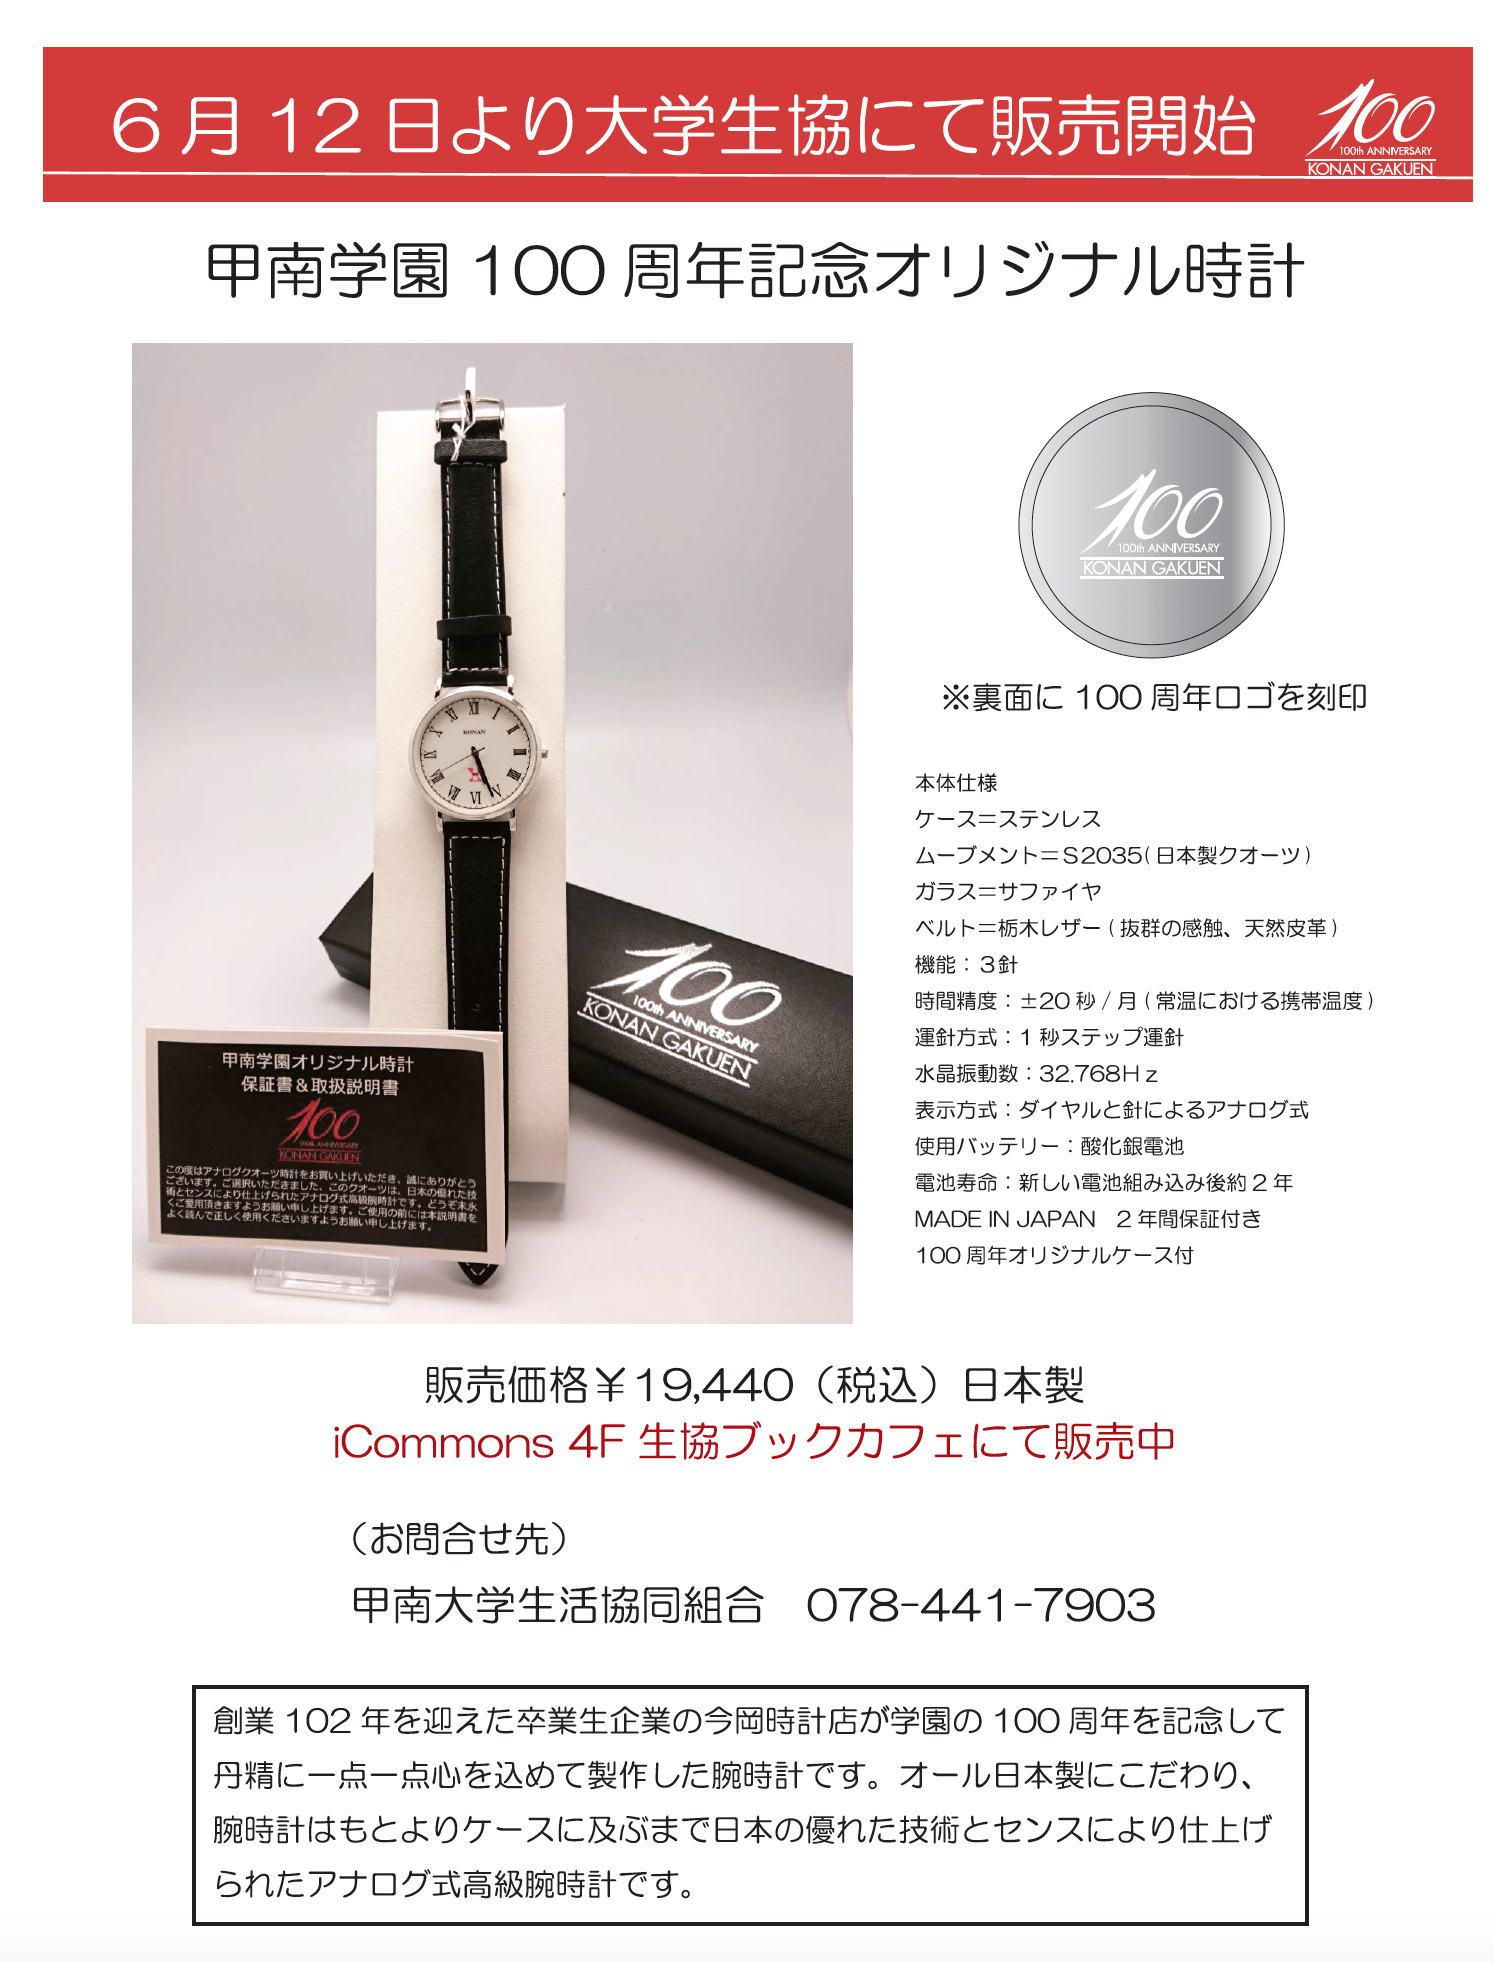 甲南学園100周年記念オリジナル時計 2018/6/12(火)より大学生協にて販売開始！